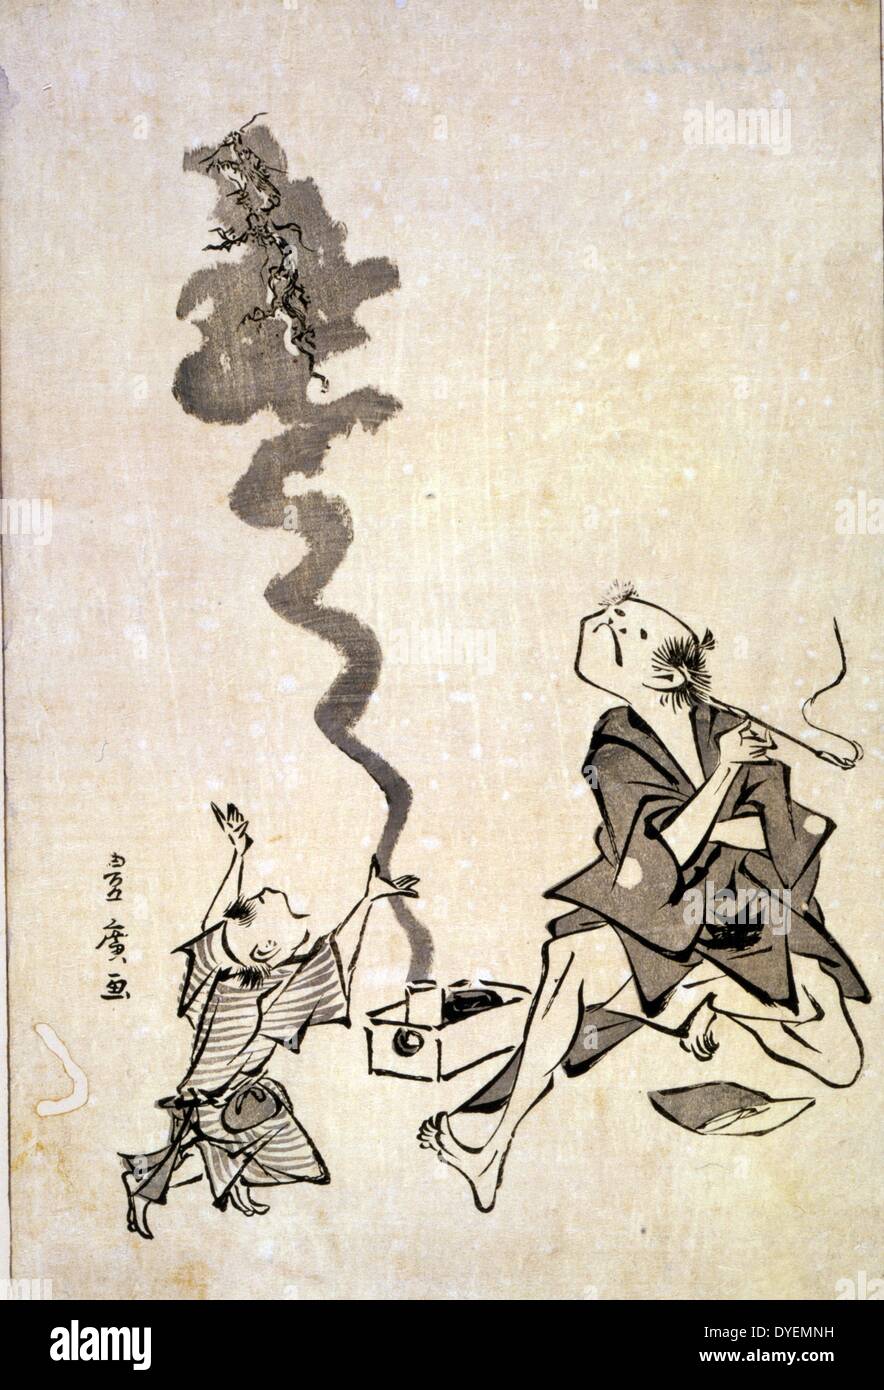 Tobae mitate ryugen sennin. Übersetzung: Toba-e Korrespondenz einer Chinesischen sage. Von Utagawa 1773?-1829?, japanischer Künstler. Veröffentlicht: [zwischen 1804 und 1818. drucken: Holzschnitt, das einen Mann zeigt das Rauchen einer Zigarette in einem langen Halter, und ein Drache aufsteigend in einer Wolke von Rauch aus einer Box auf dem Boden neben ihm; ein Kind (?) Gesten gegenüber den Drachen. . Stockfoto